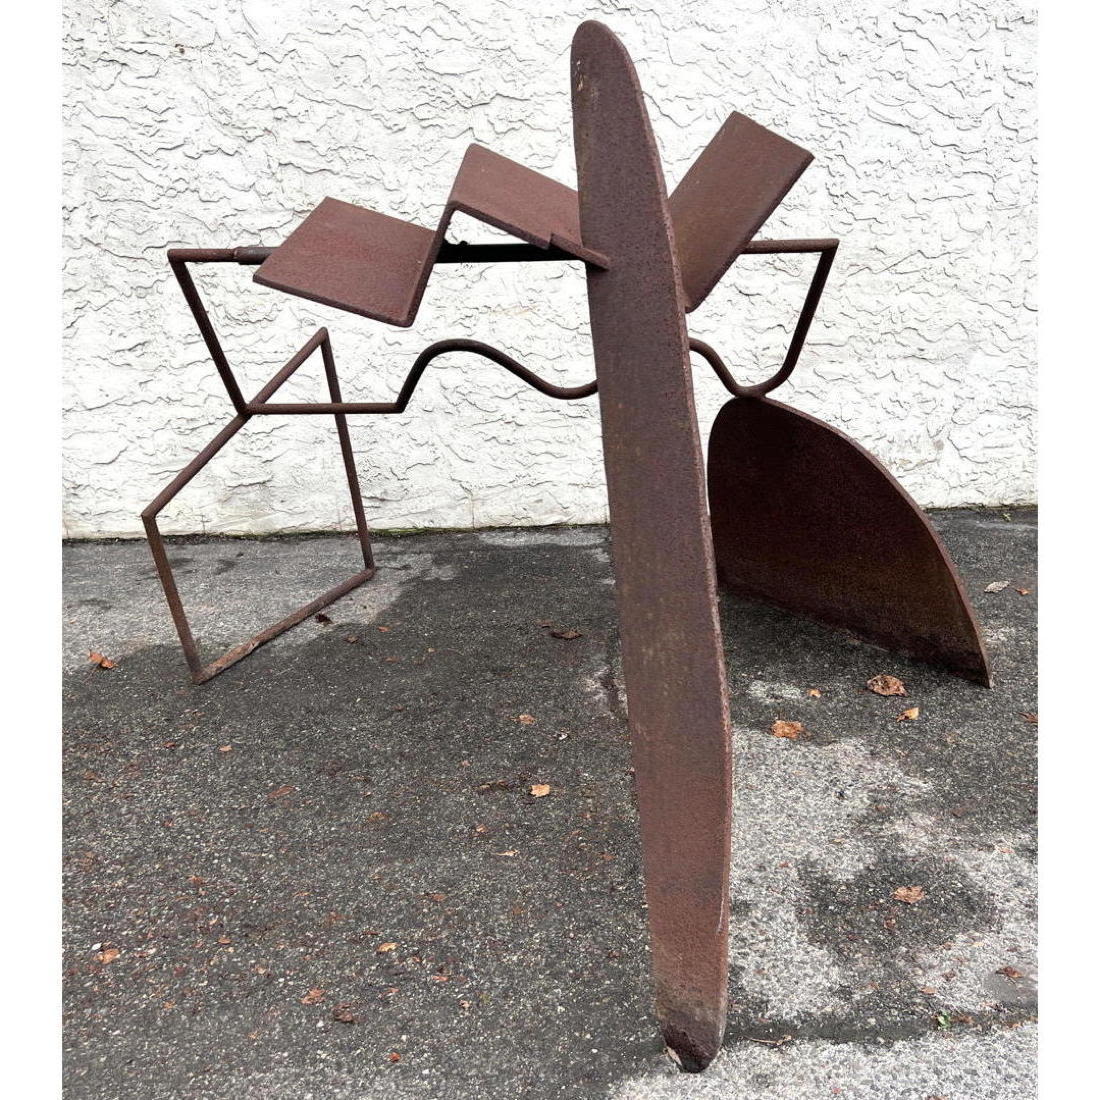 Abstract Modern Iron Garden Sculpture.